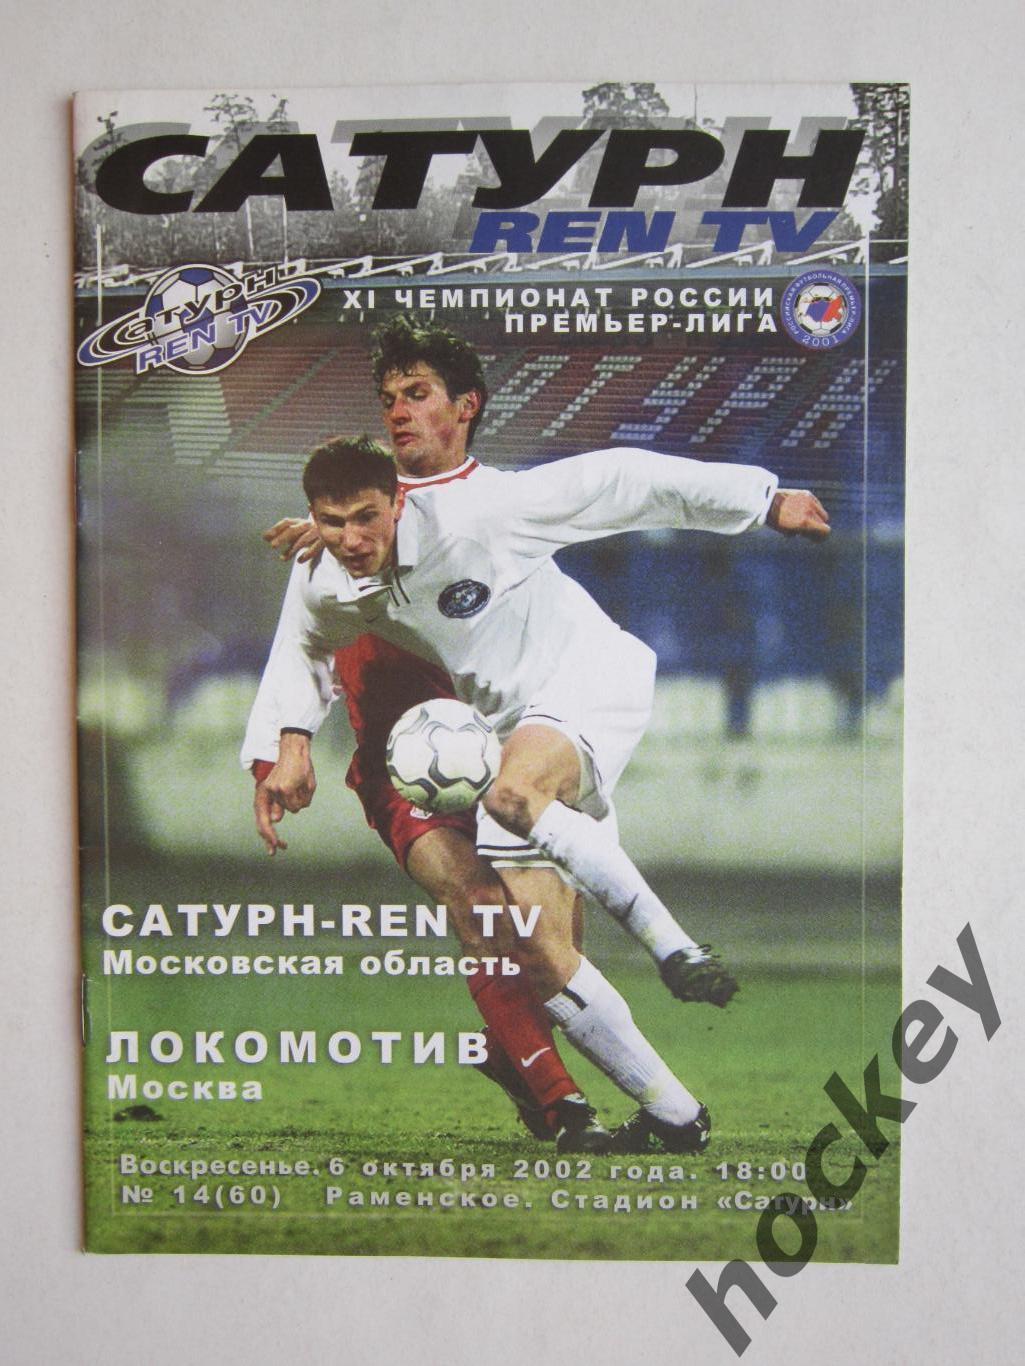 Сатурн REN TV Московская область - Локомотив Москва 6.10.2002